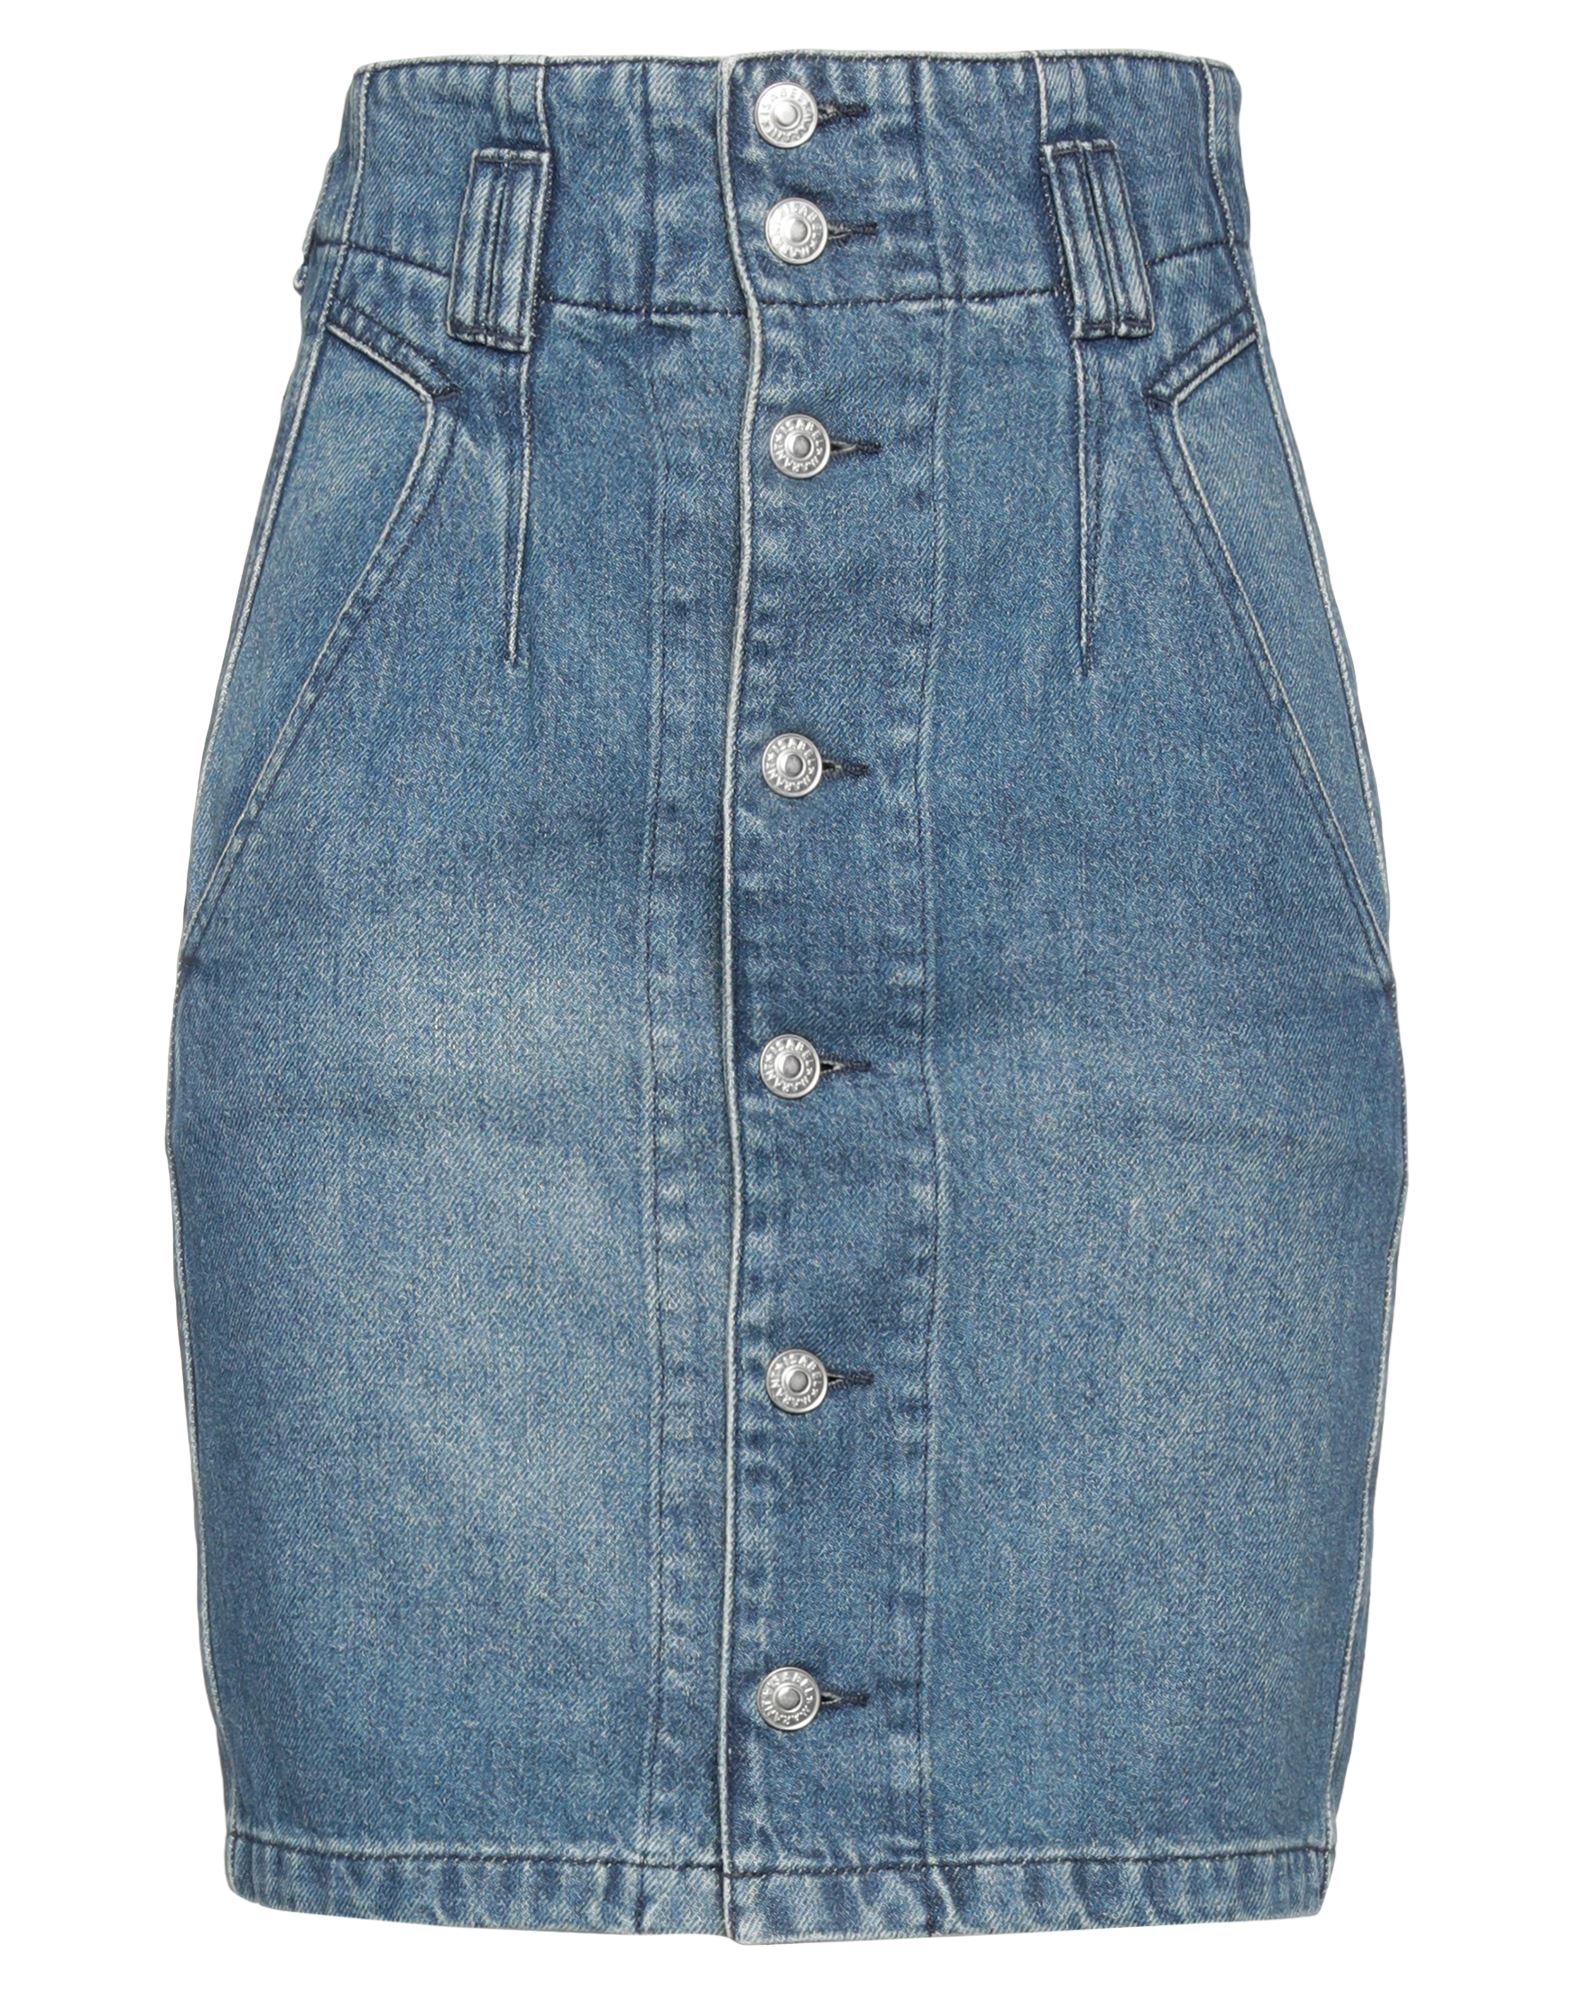 Isabel Marant Étoile Woman Denim Skirt Blue Size 4 Cotton